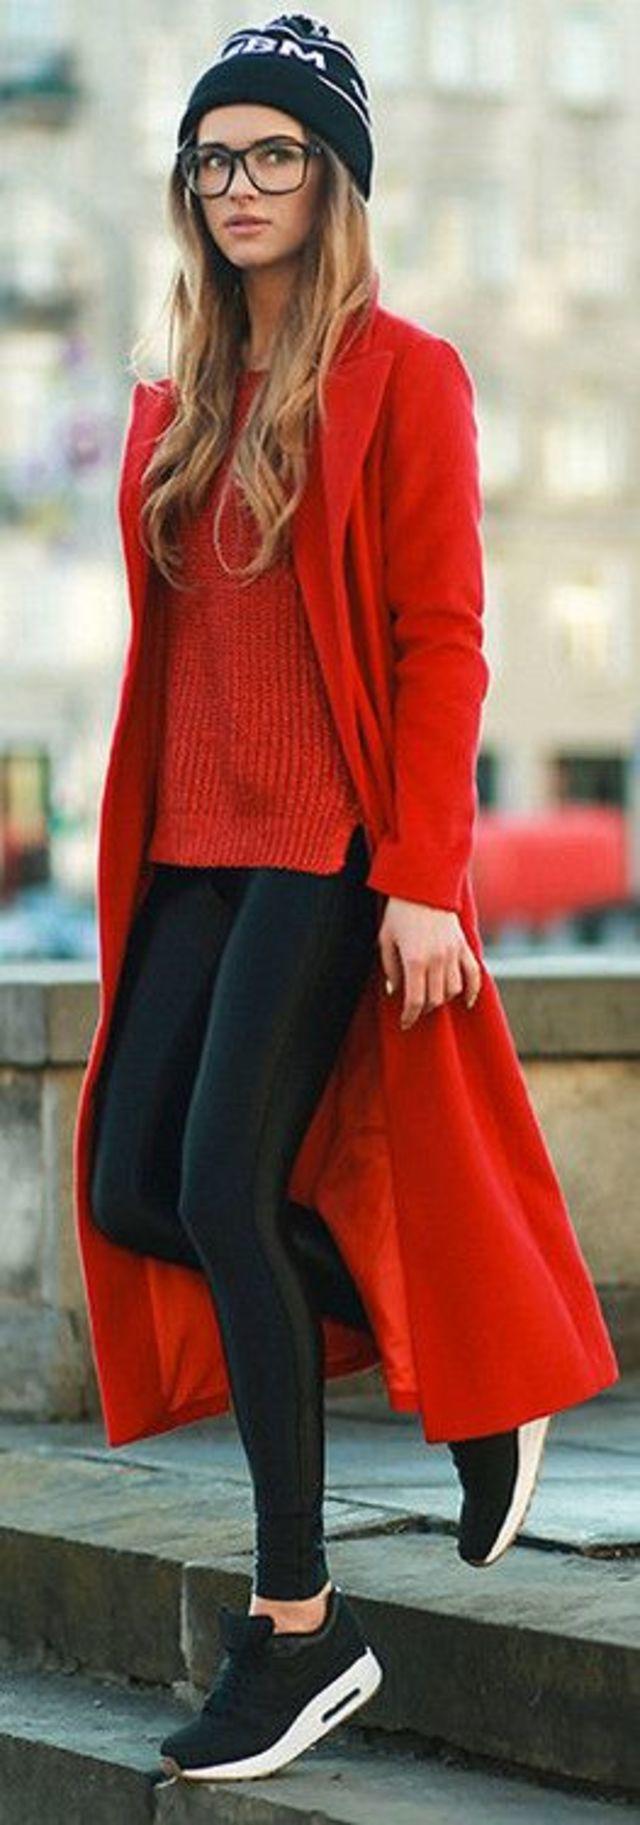 sorte sneakers + skinny skinnies + rød sweater + rød frakke + sort hue